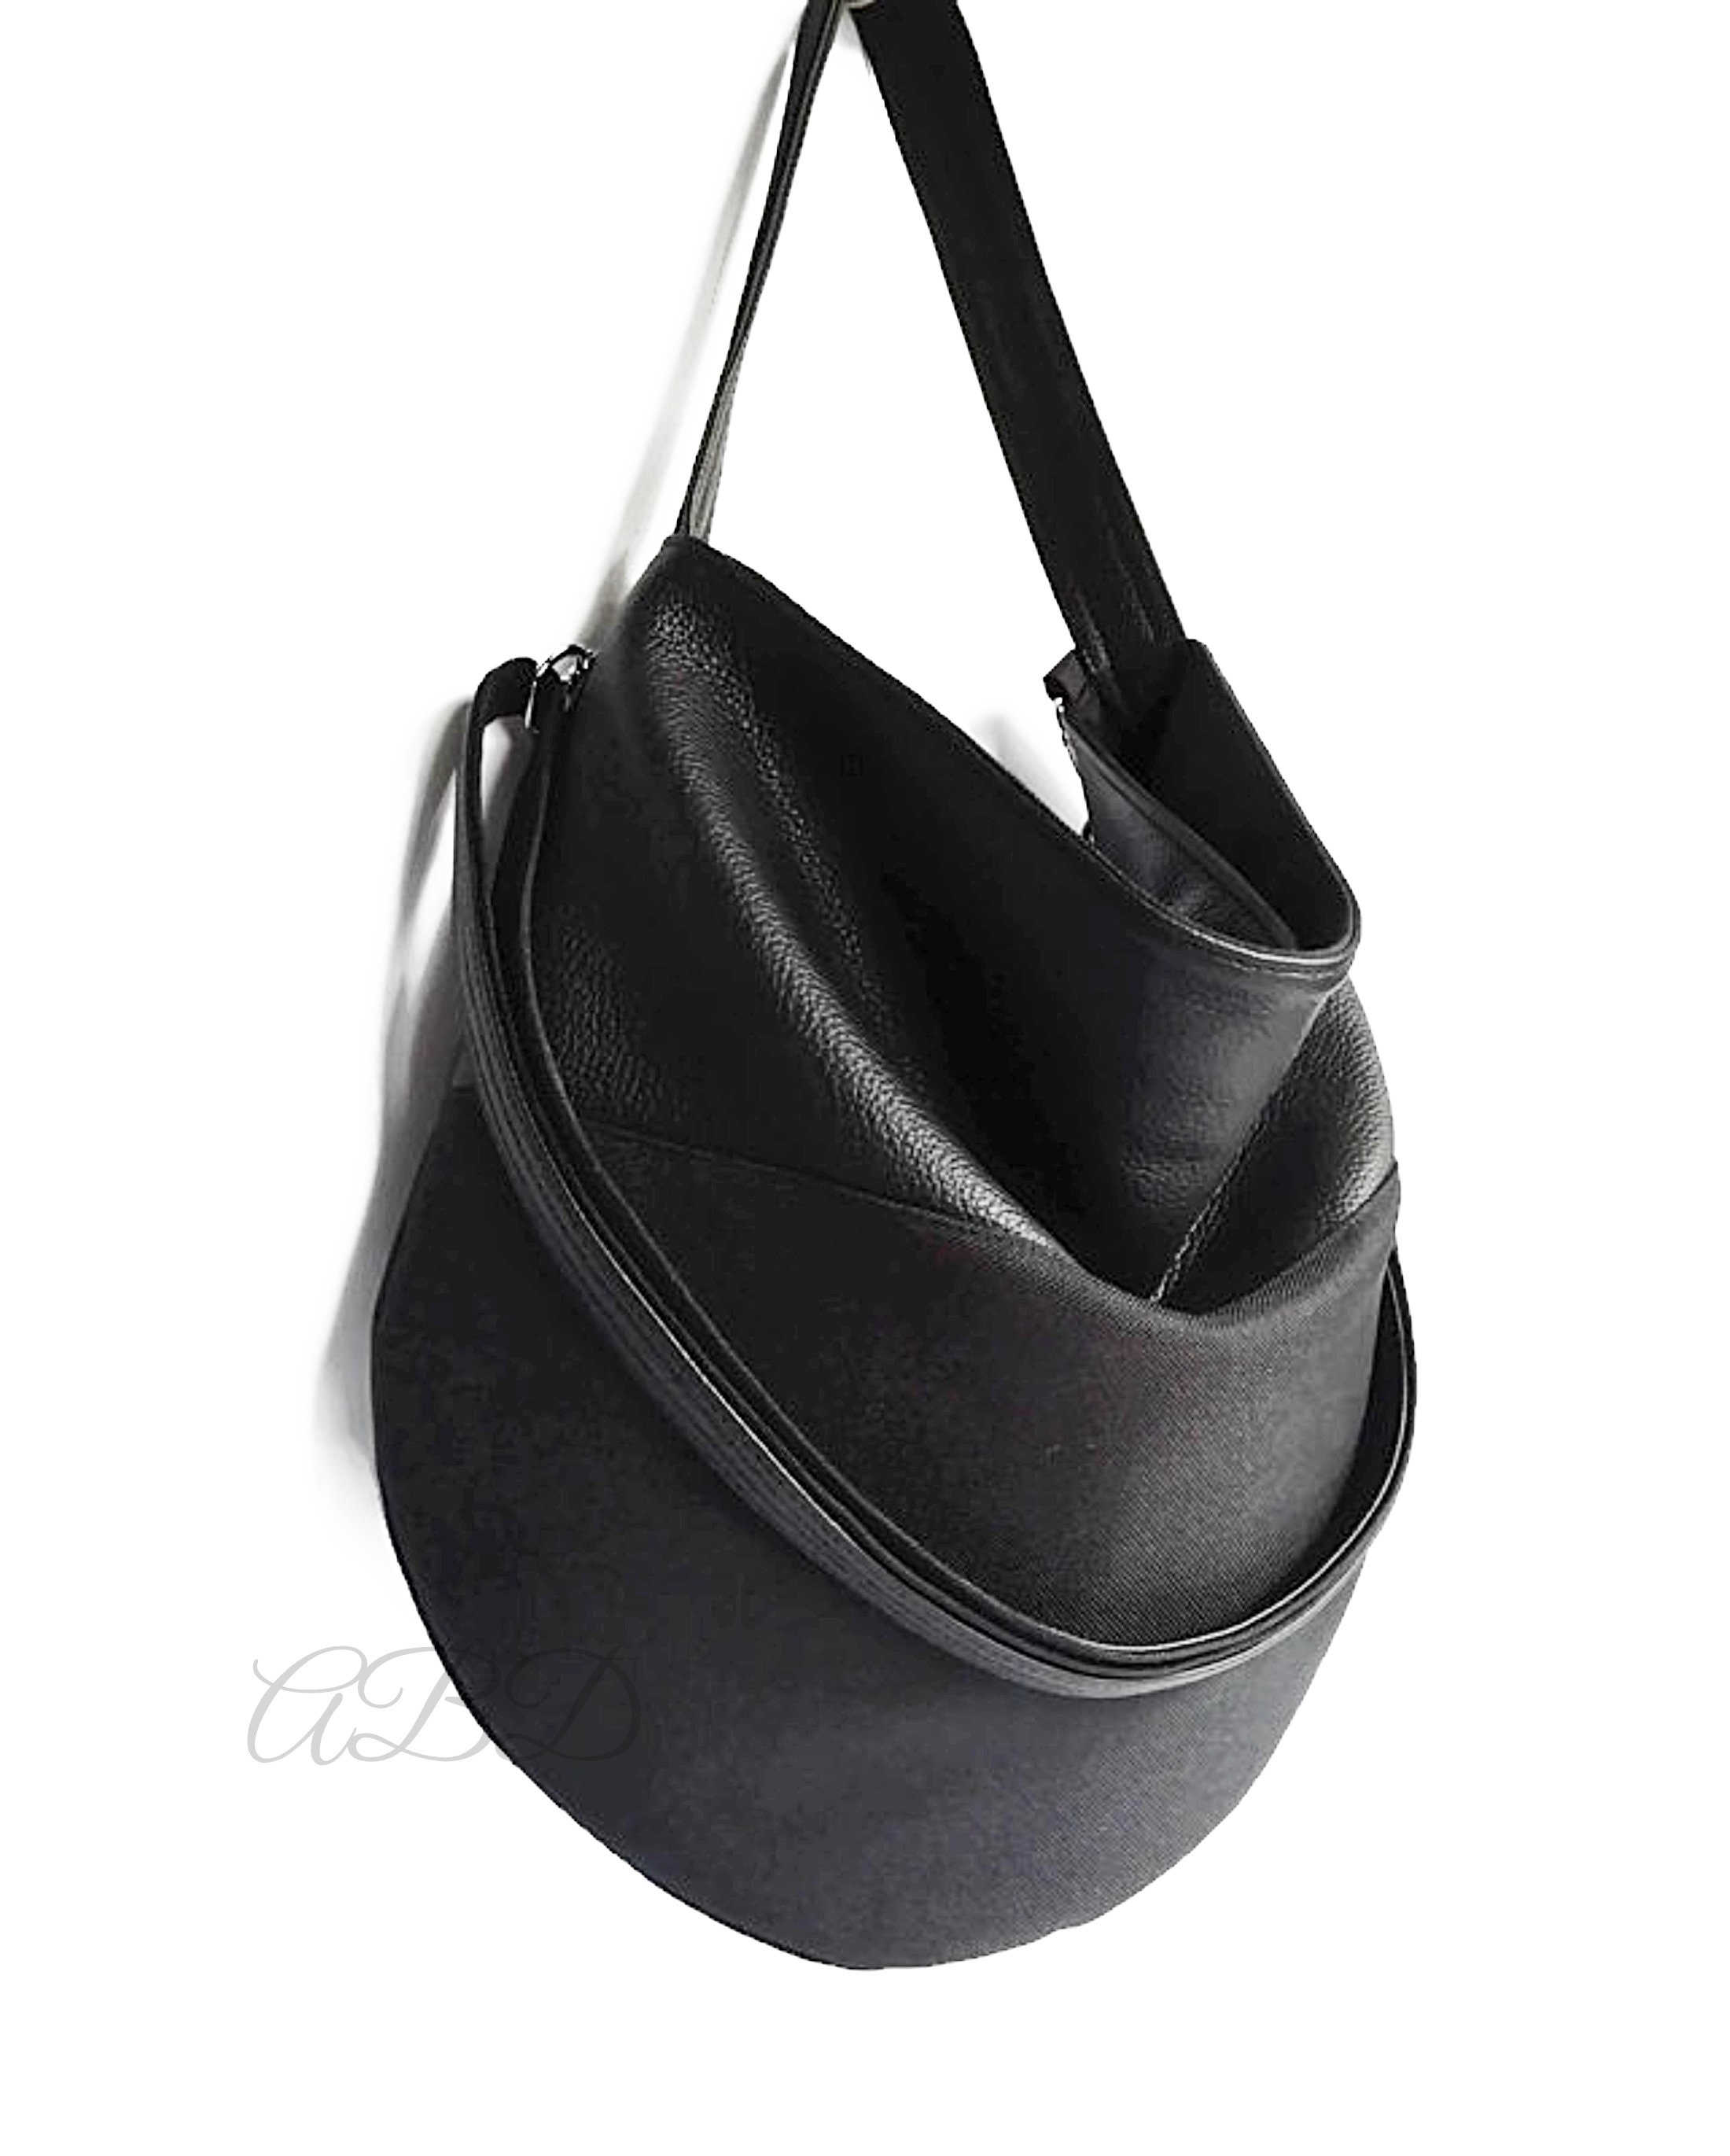 Black hobo bag Black handbag Black vegan bag Large shoulder | Etsy